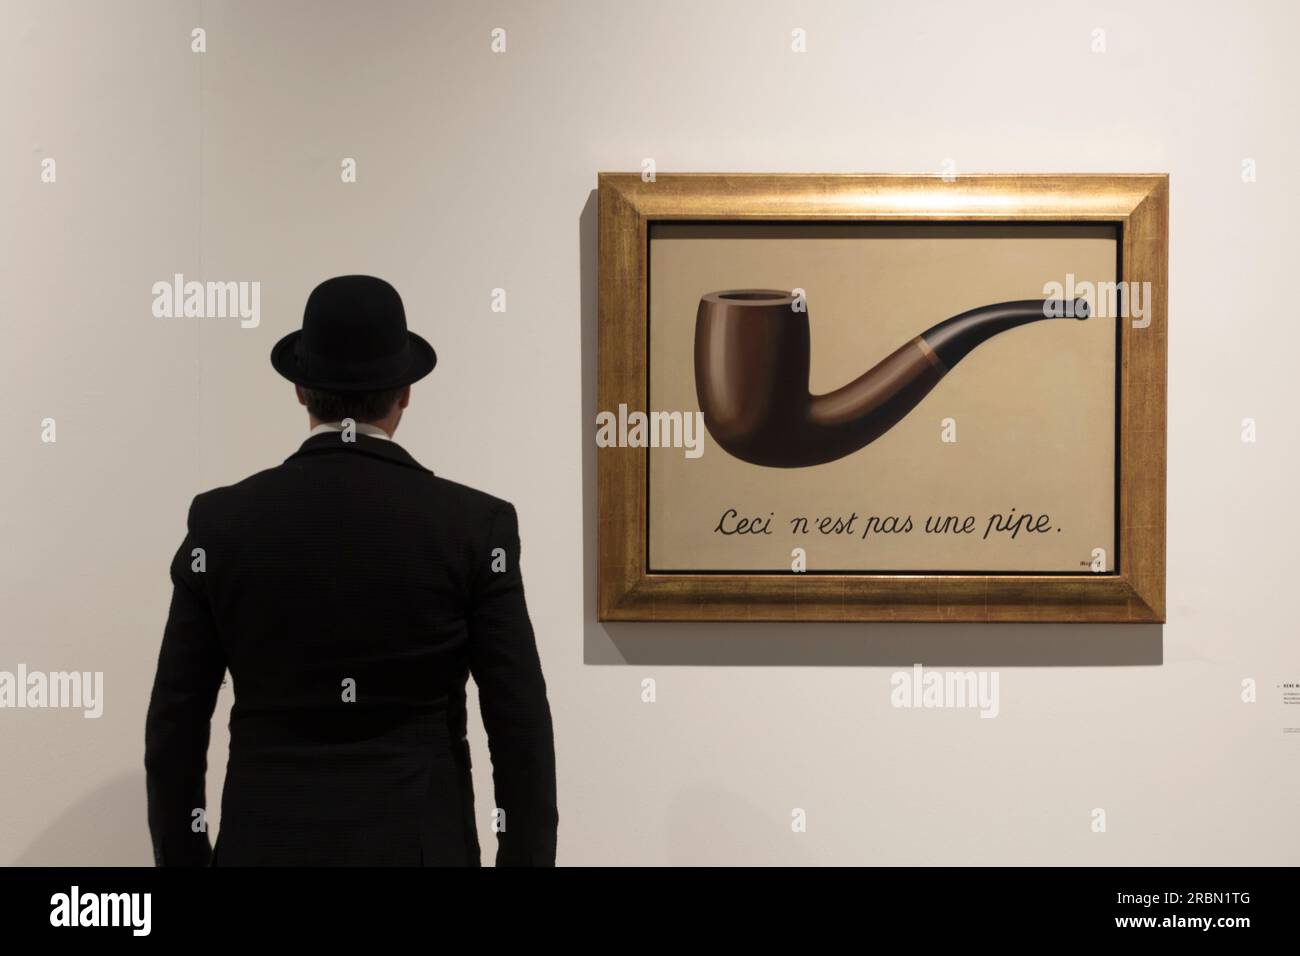 René Magritte, La Trahison des images, Brussels, Belgium Stock Photo